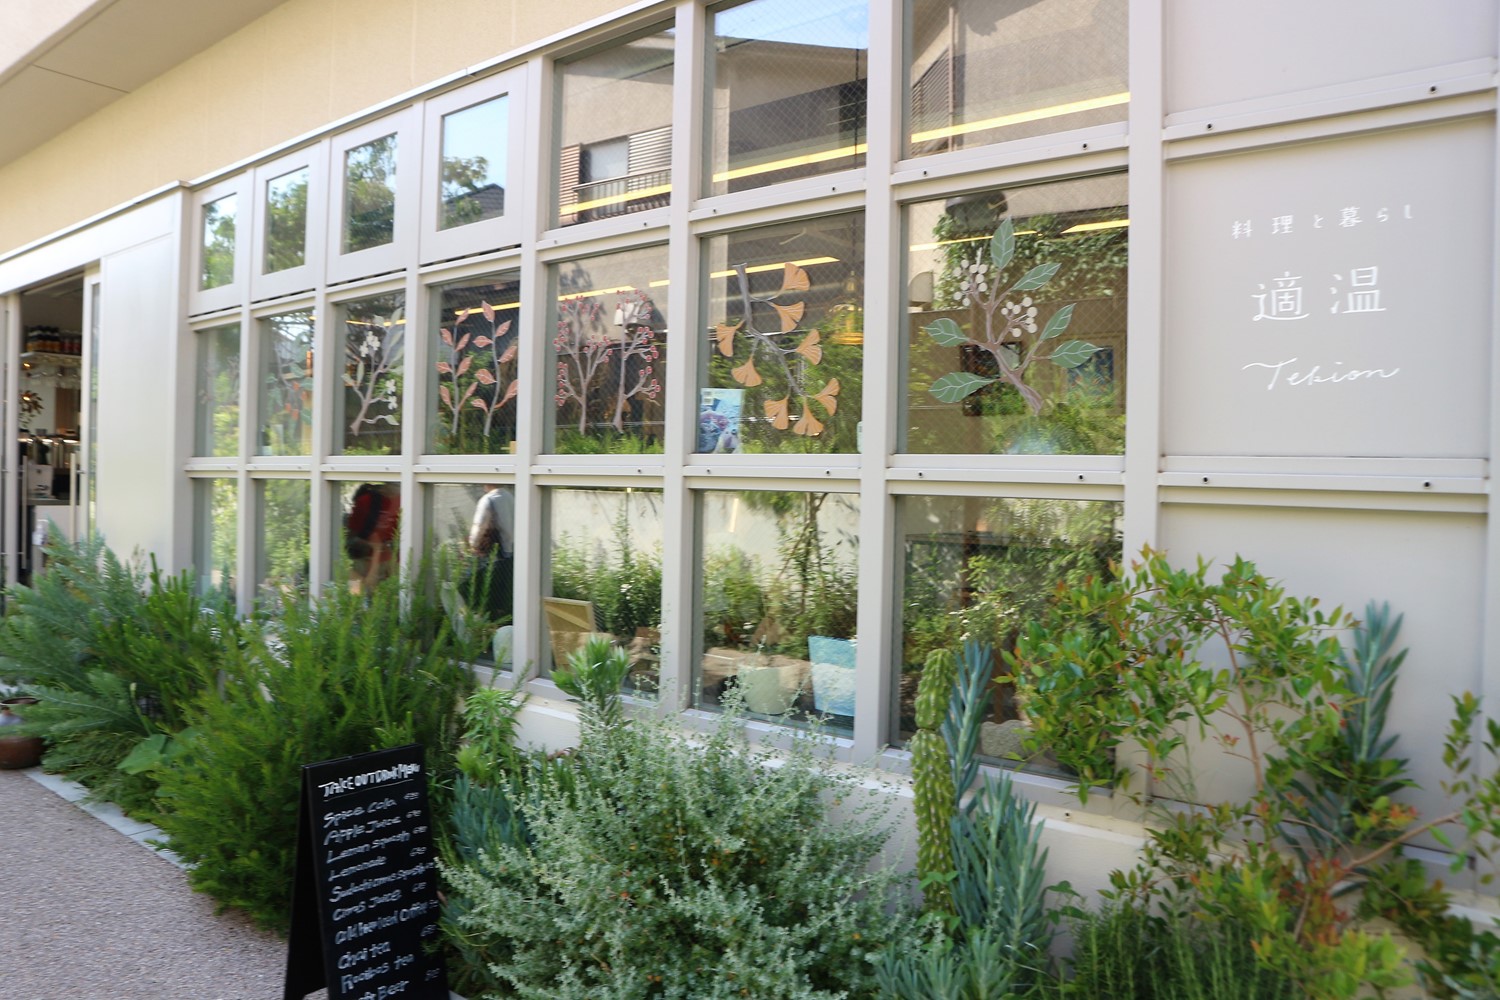 緑に囲まれた、癒やされる店構え。窓に描かれた植物のイラストも印象的。